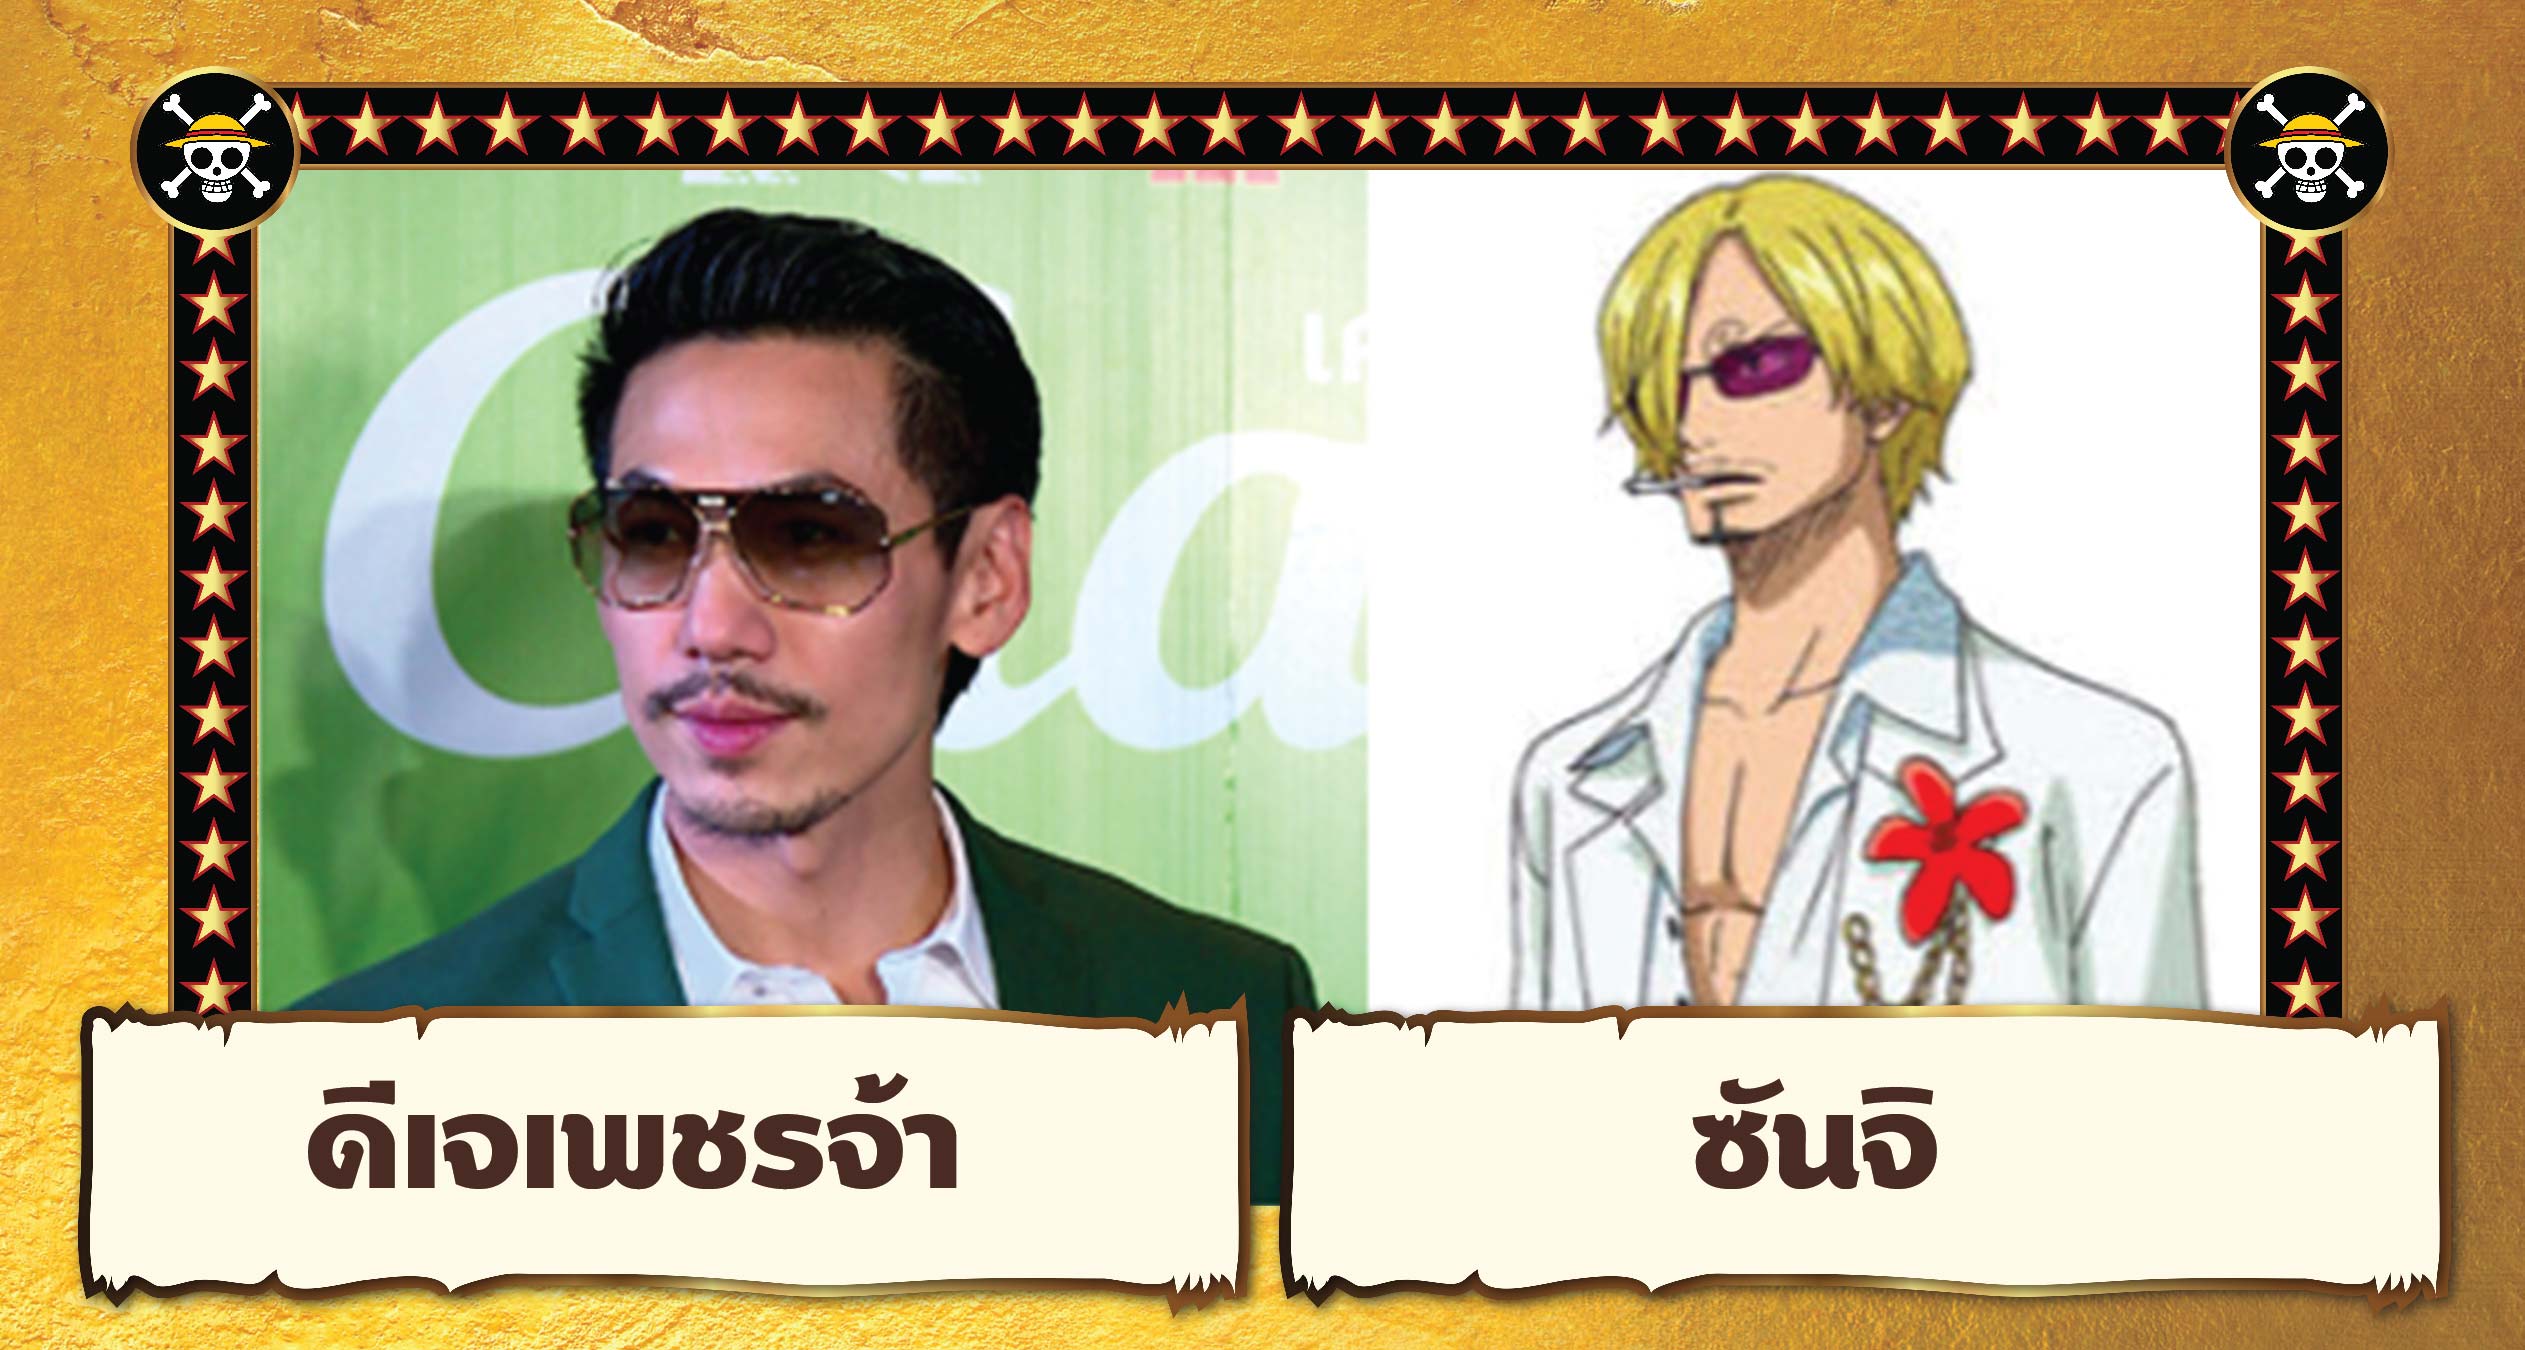 One Piece Film Gold: ครบรสความเป็นวันพีซ - #beartai